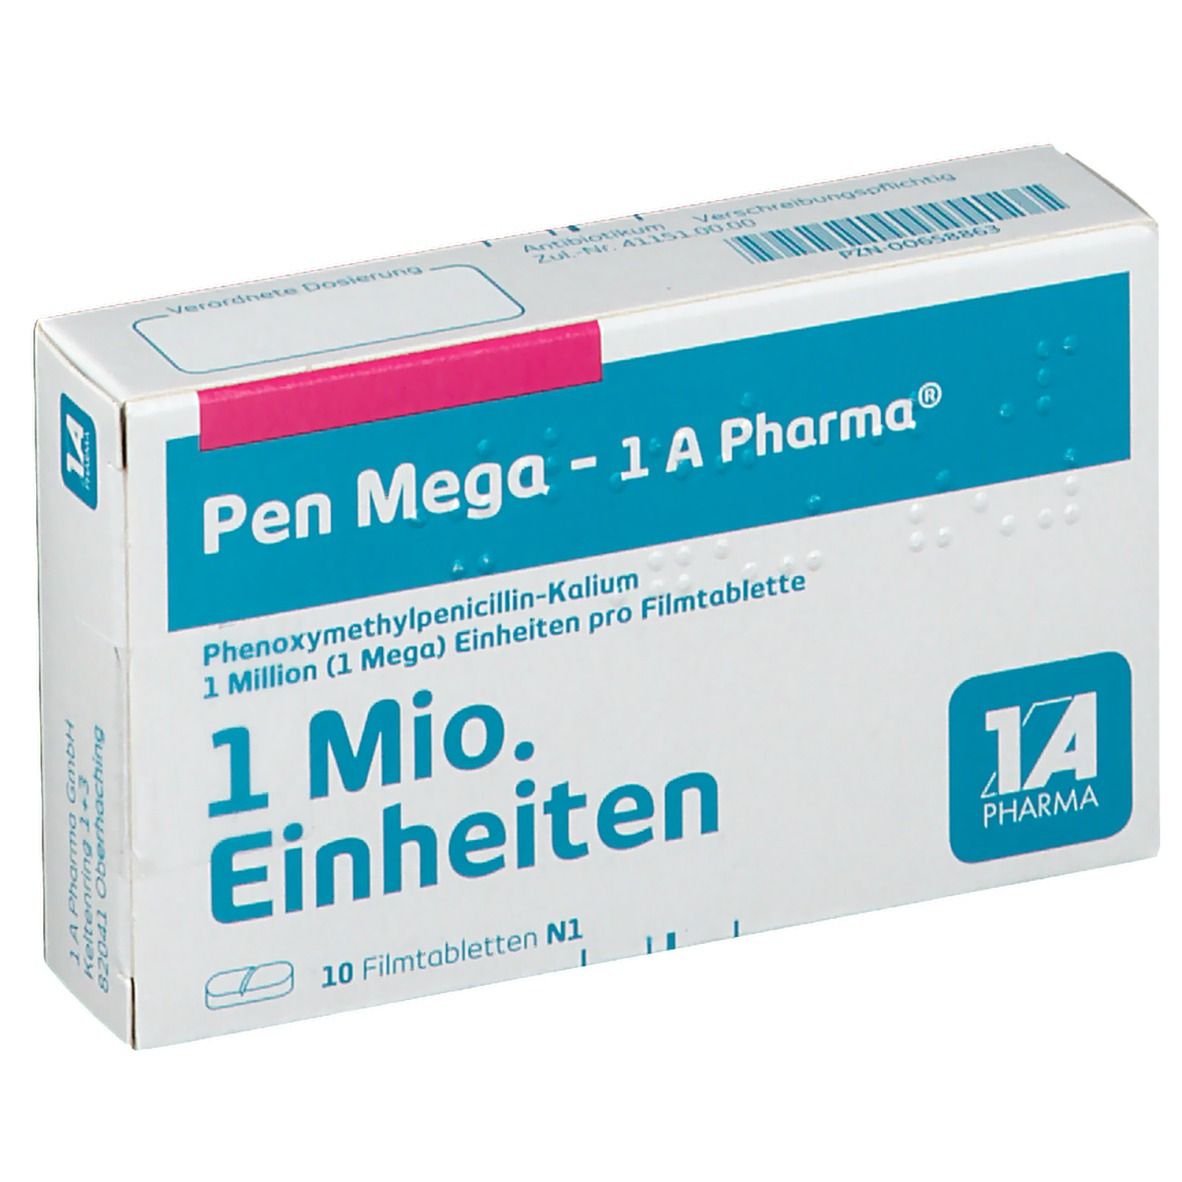 Pen Mega 1A Pharma®